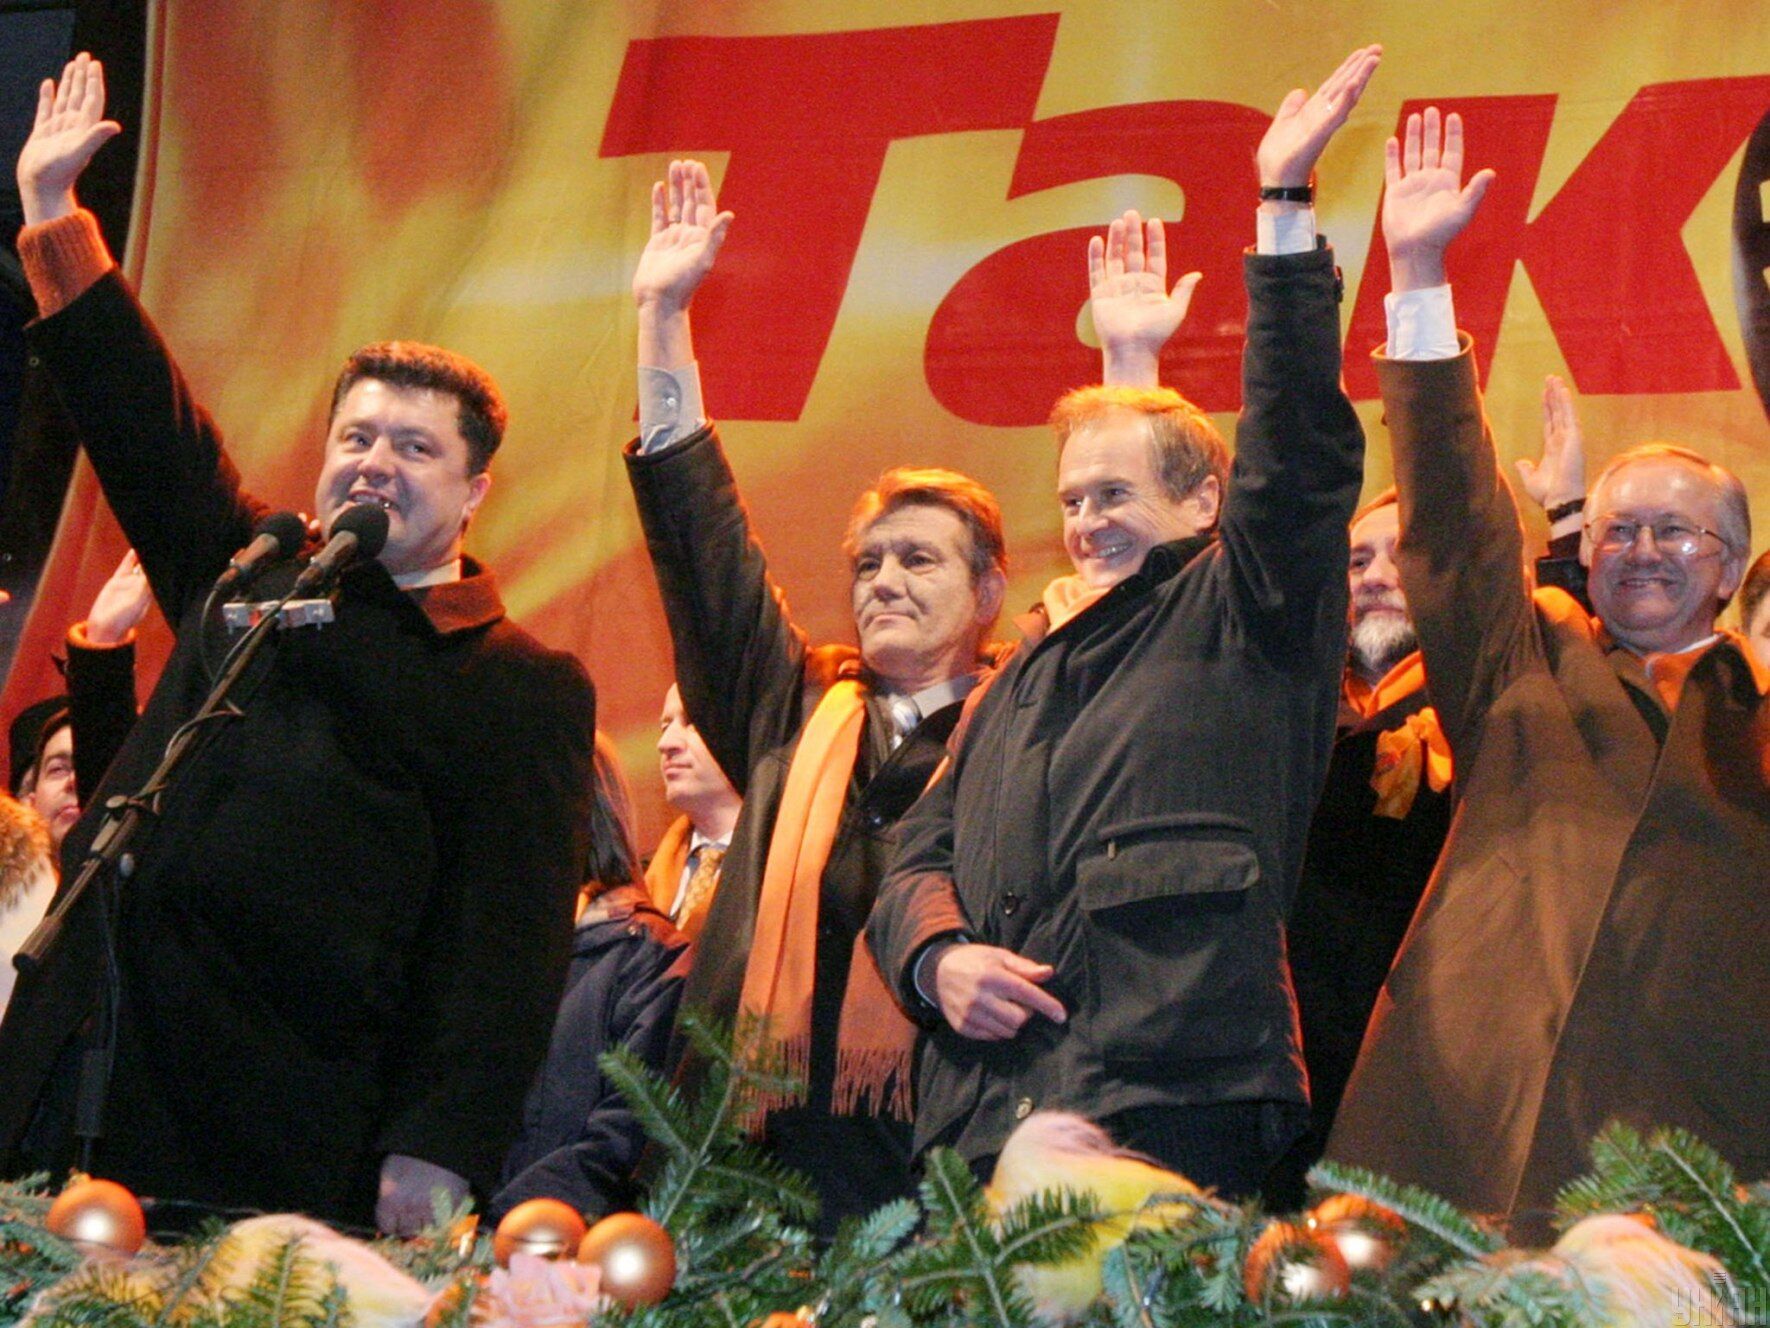 Петро Порошенко, Віктор Ющенко, Юрій Костенко і Борис Тарасюк, 28 грудня 2004 року